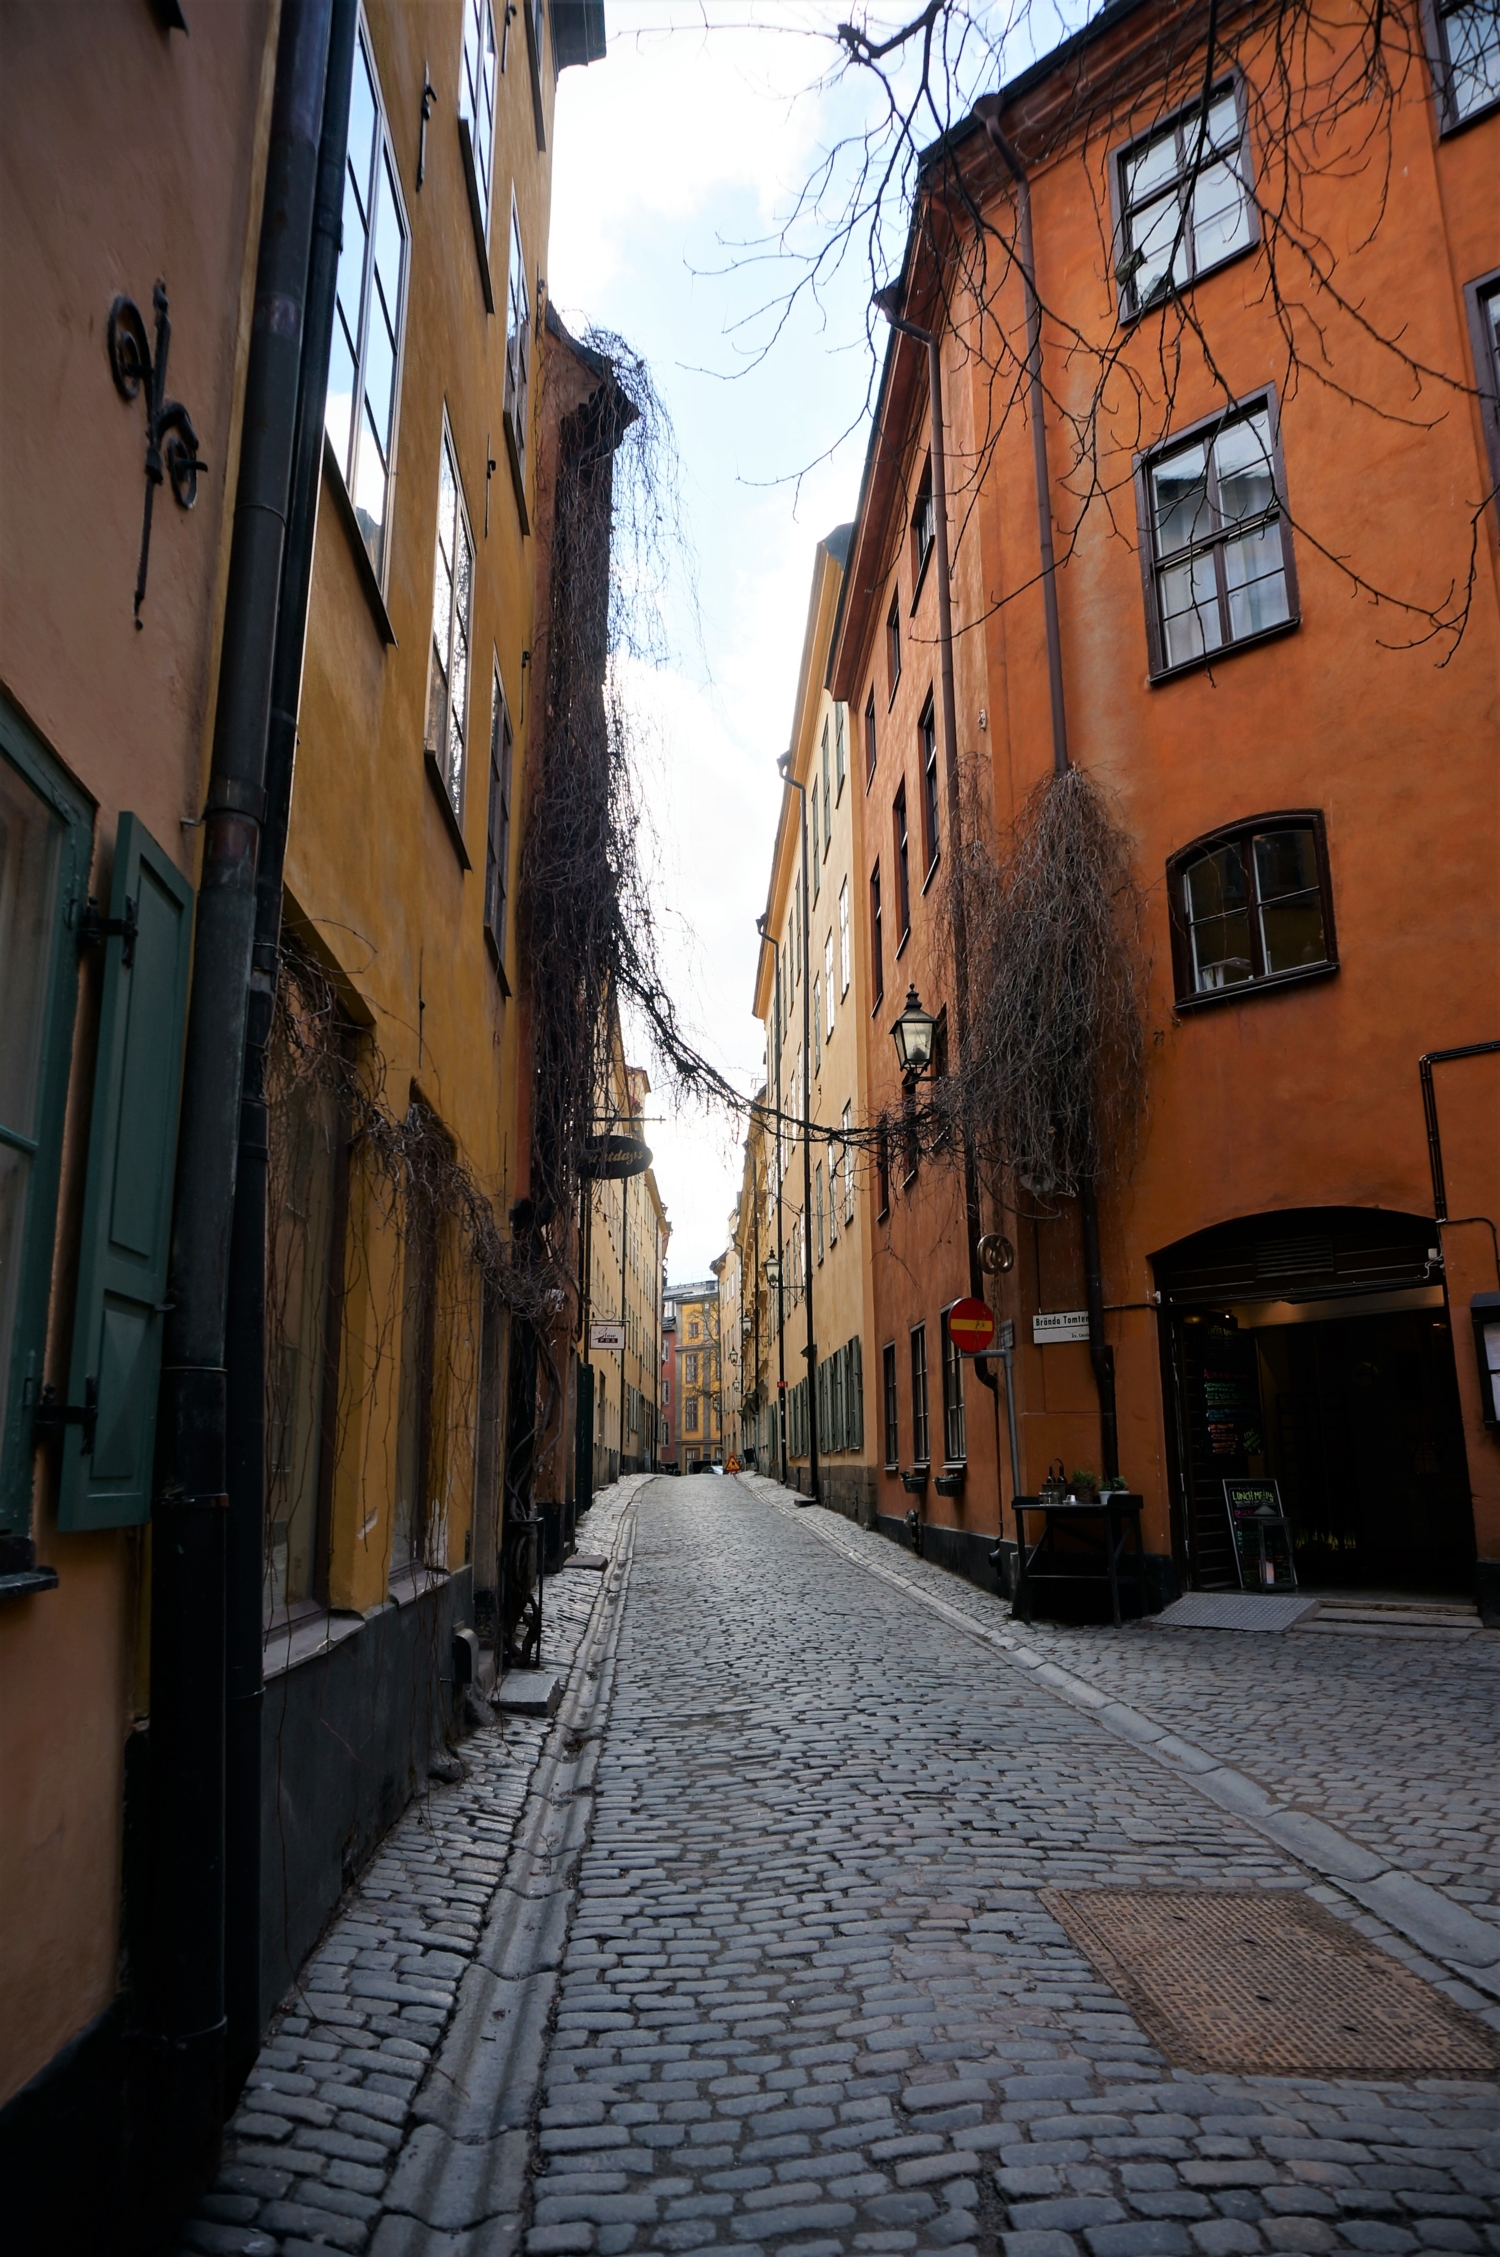 Улочка Стокгольма